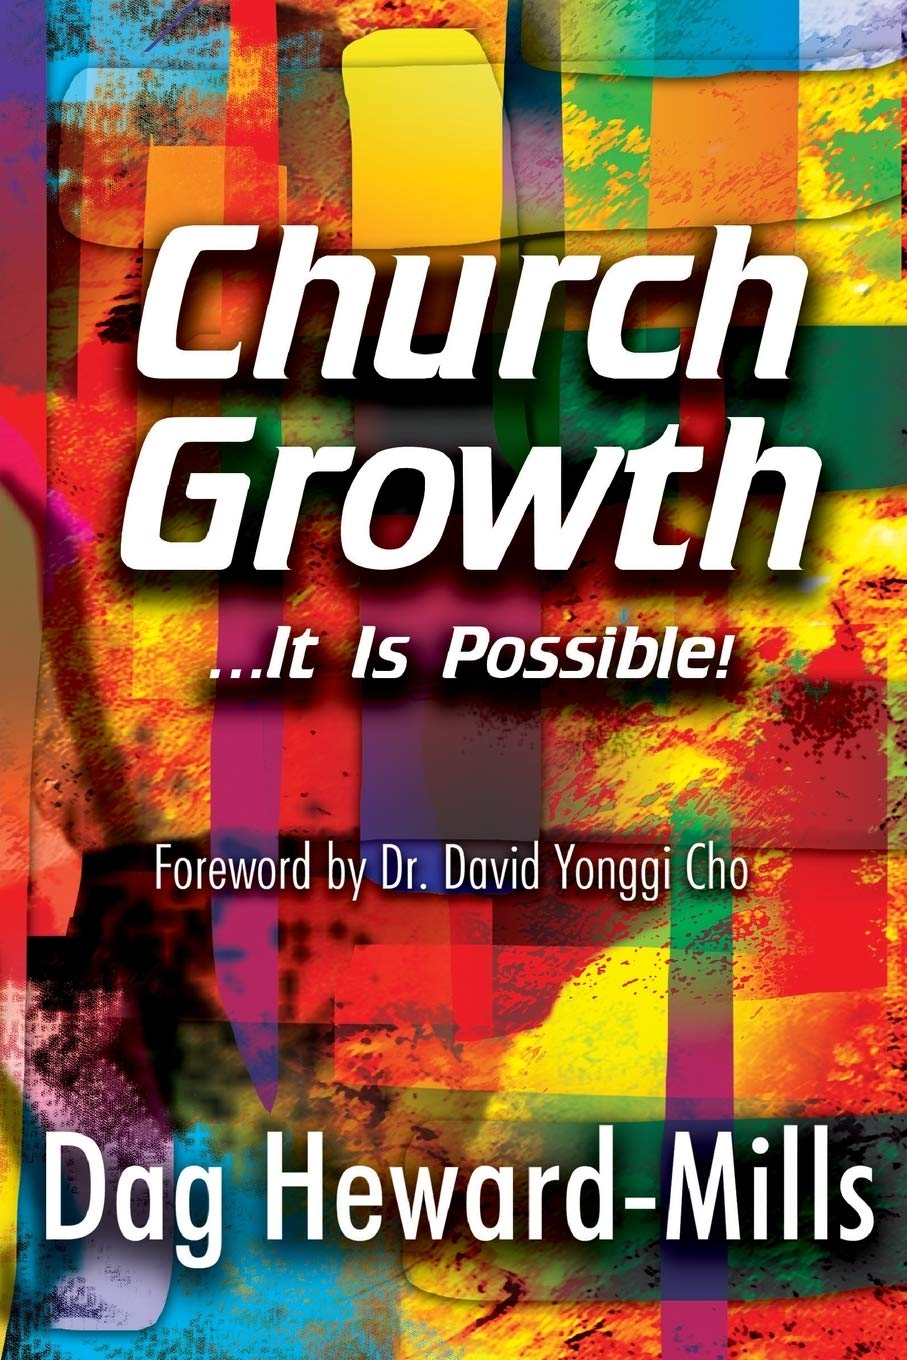 DOWNLOAD PDF: Church Growth by Dag Heward-Mills 17